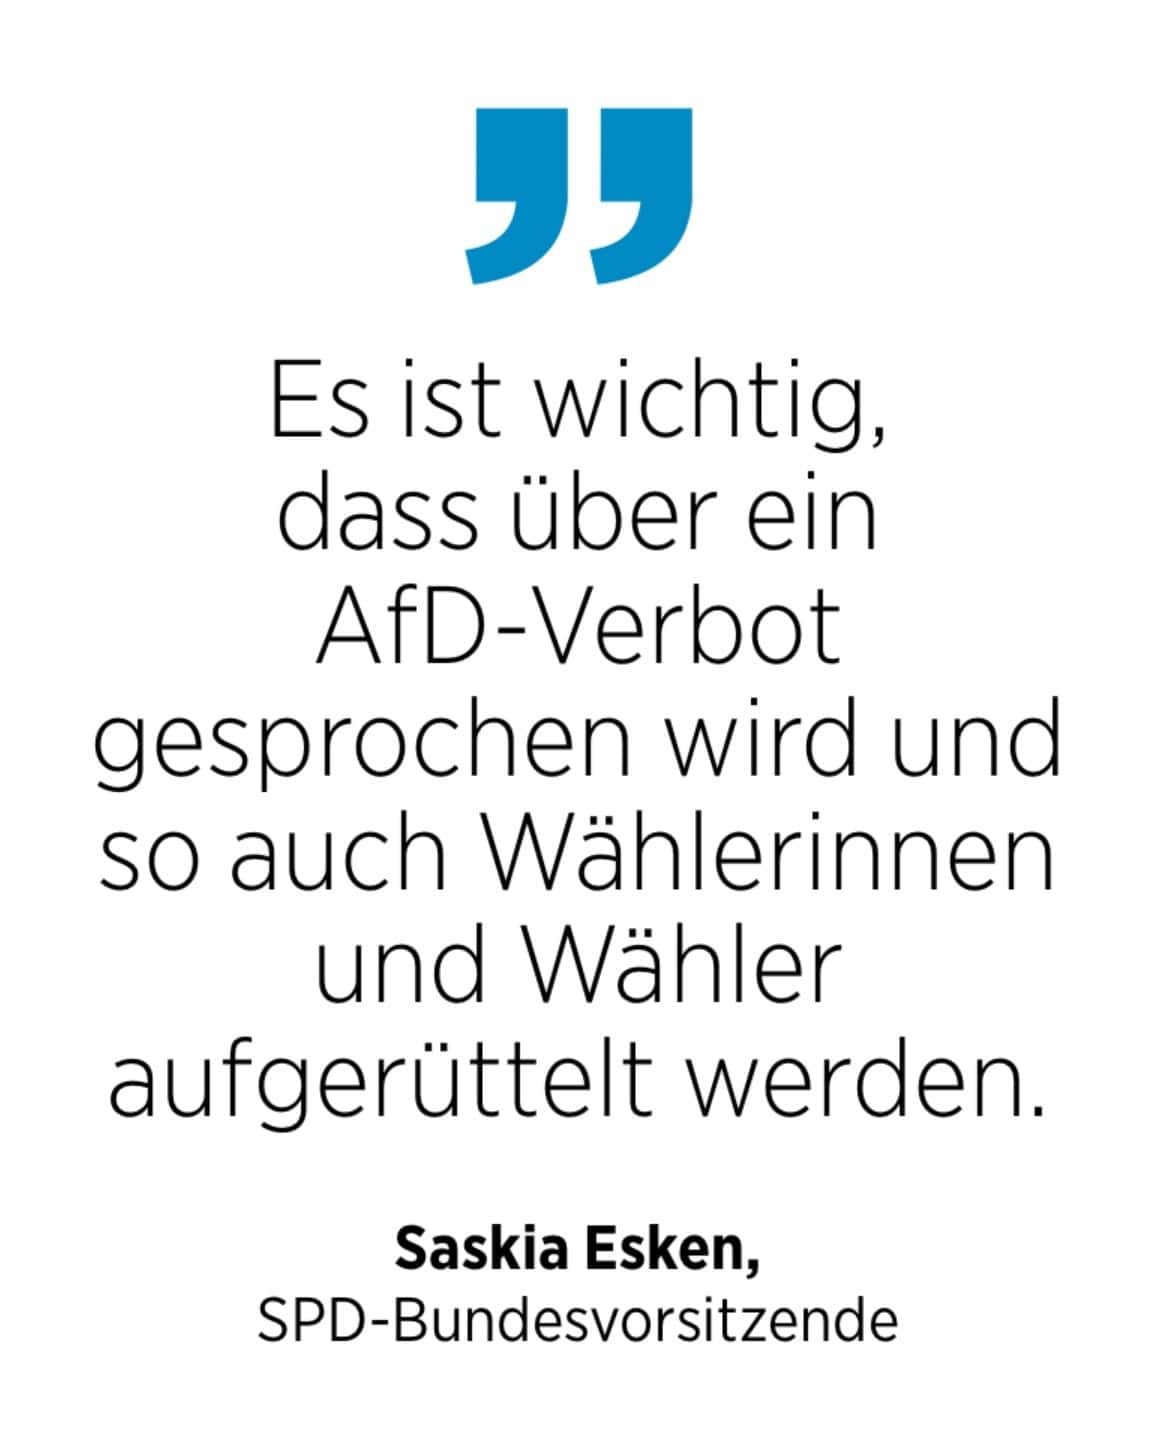 Saskia Esken, SPD-Bundesvorsitzende: Es ist wichtig, dass über ein AfD-Verbot gesprochen wird und so auch Wählerinnen und Wähler aufgerüttelt werden.